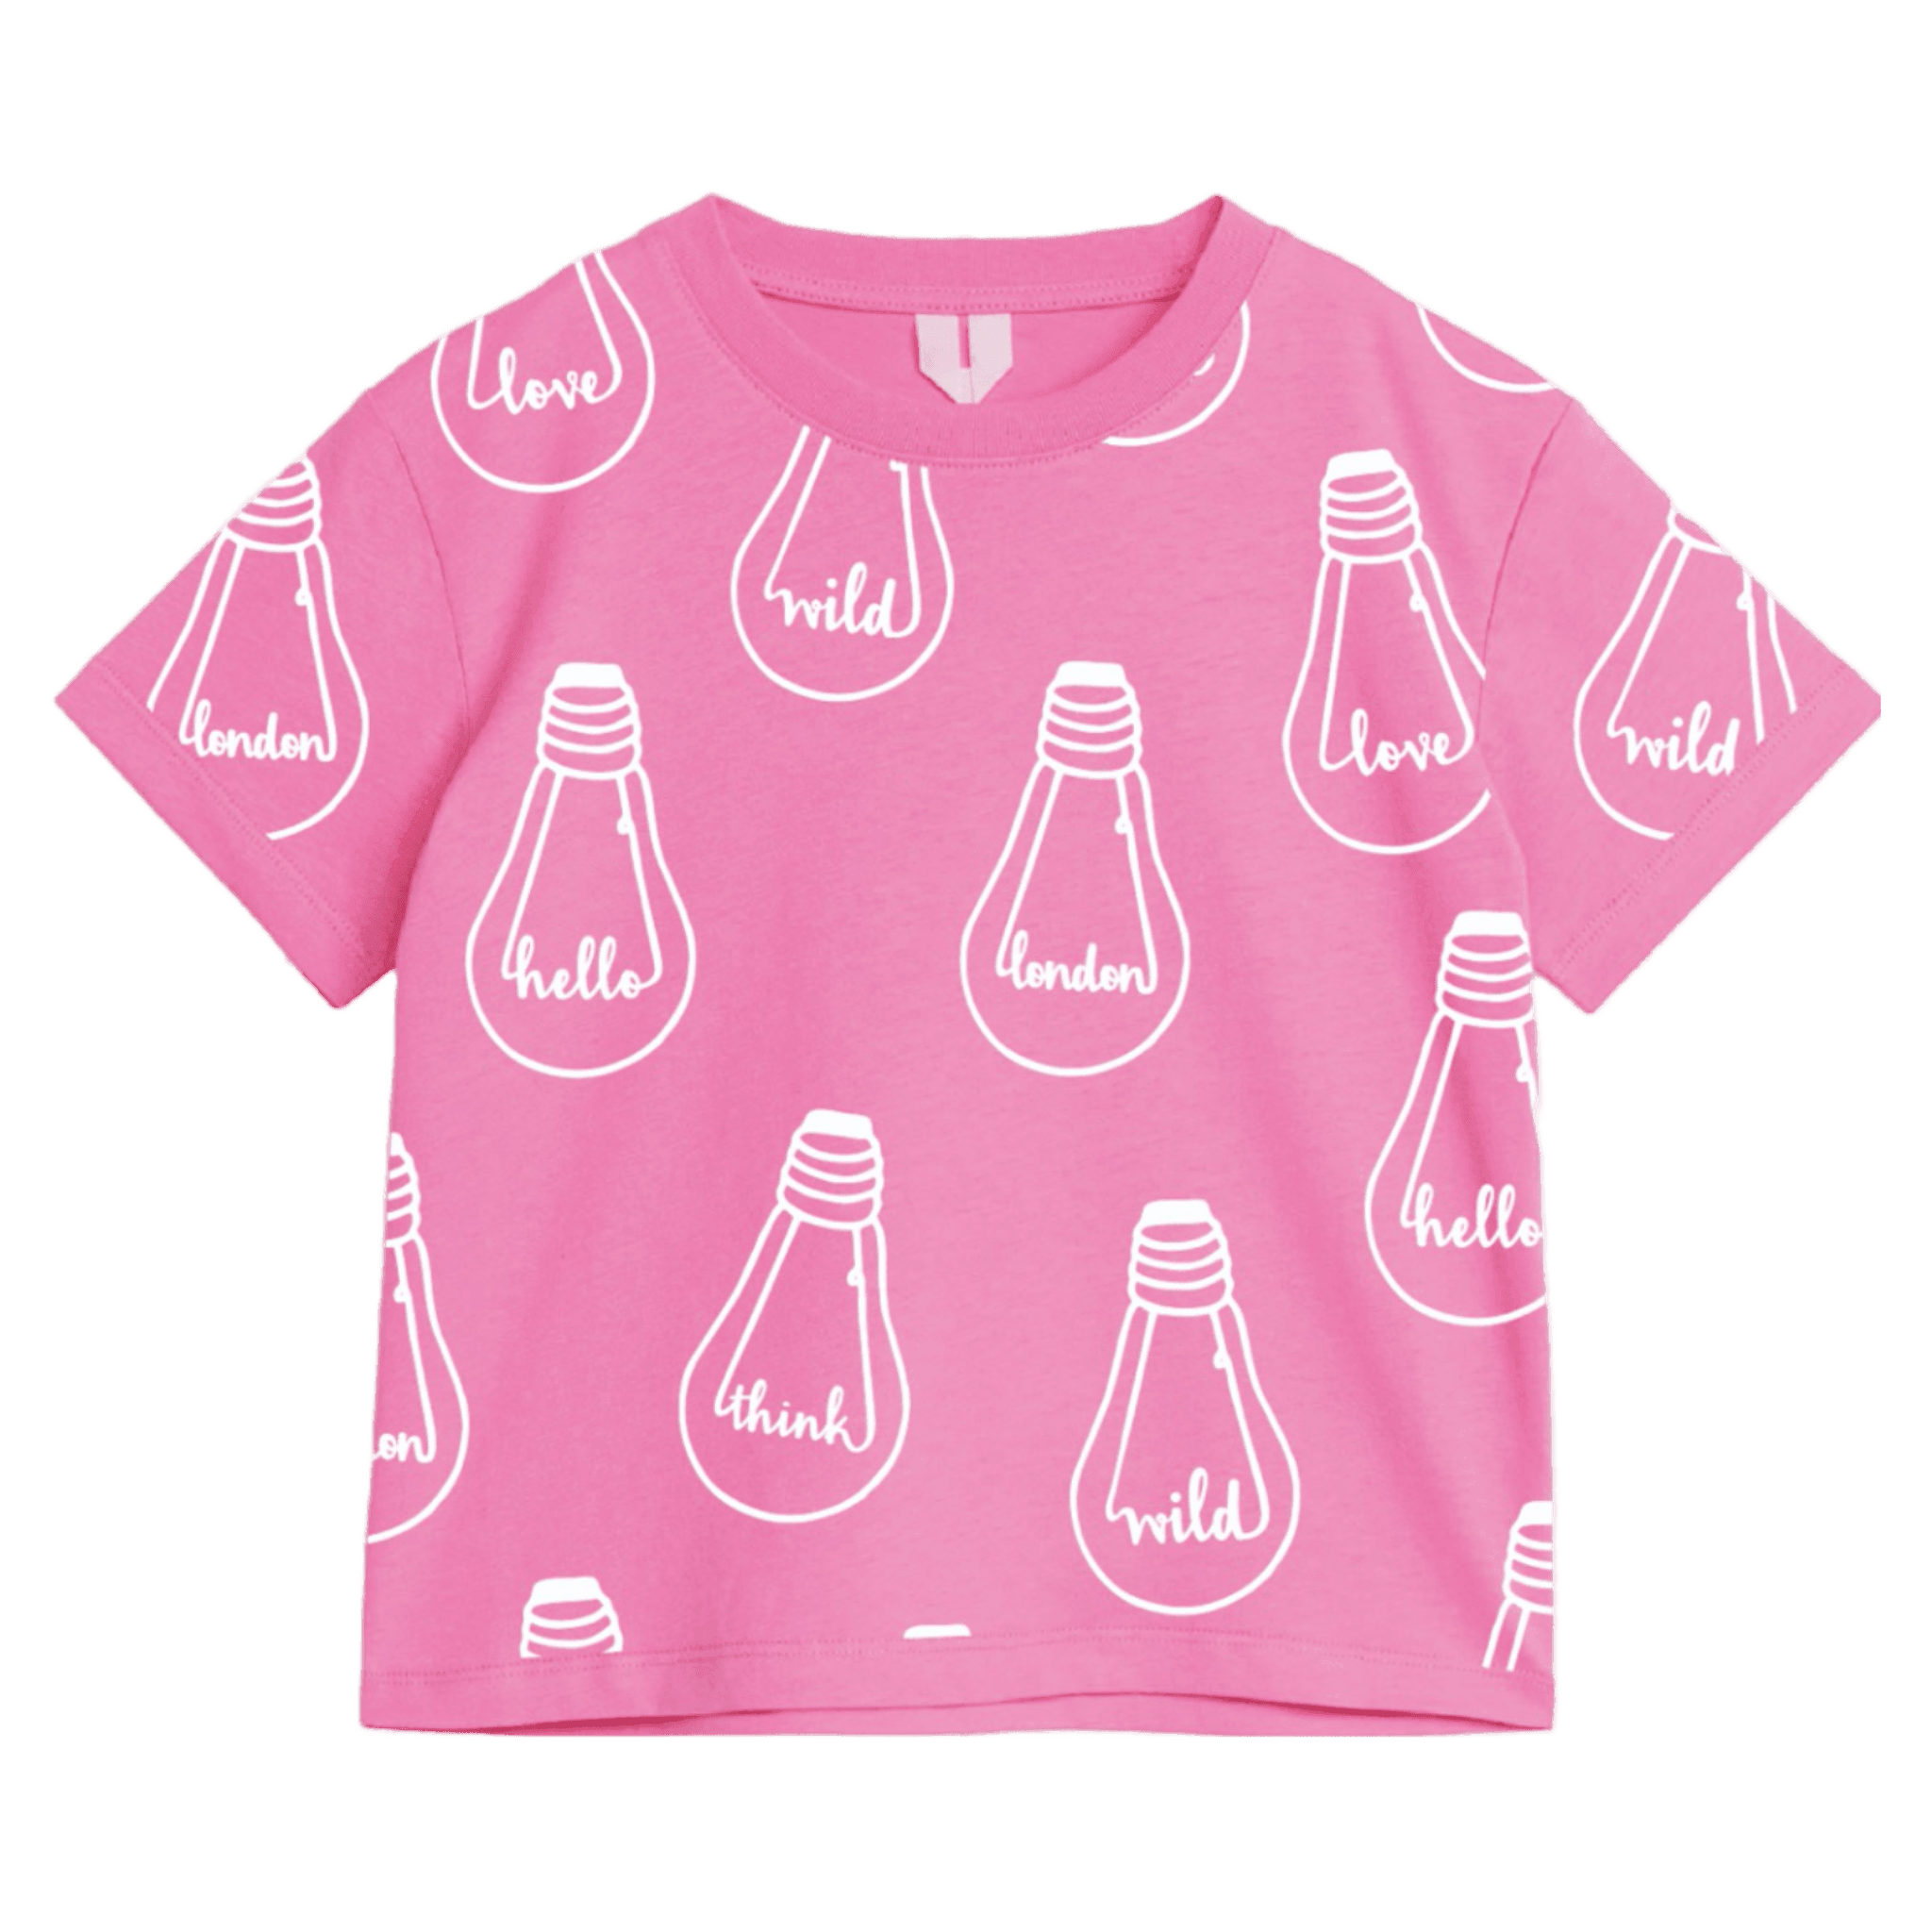 Bulb' T-shirt Pink - Bulb London Studio